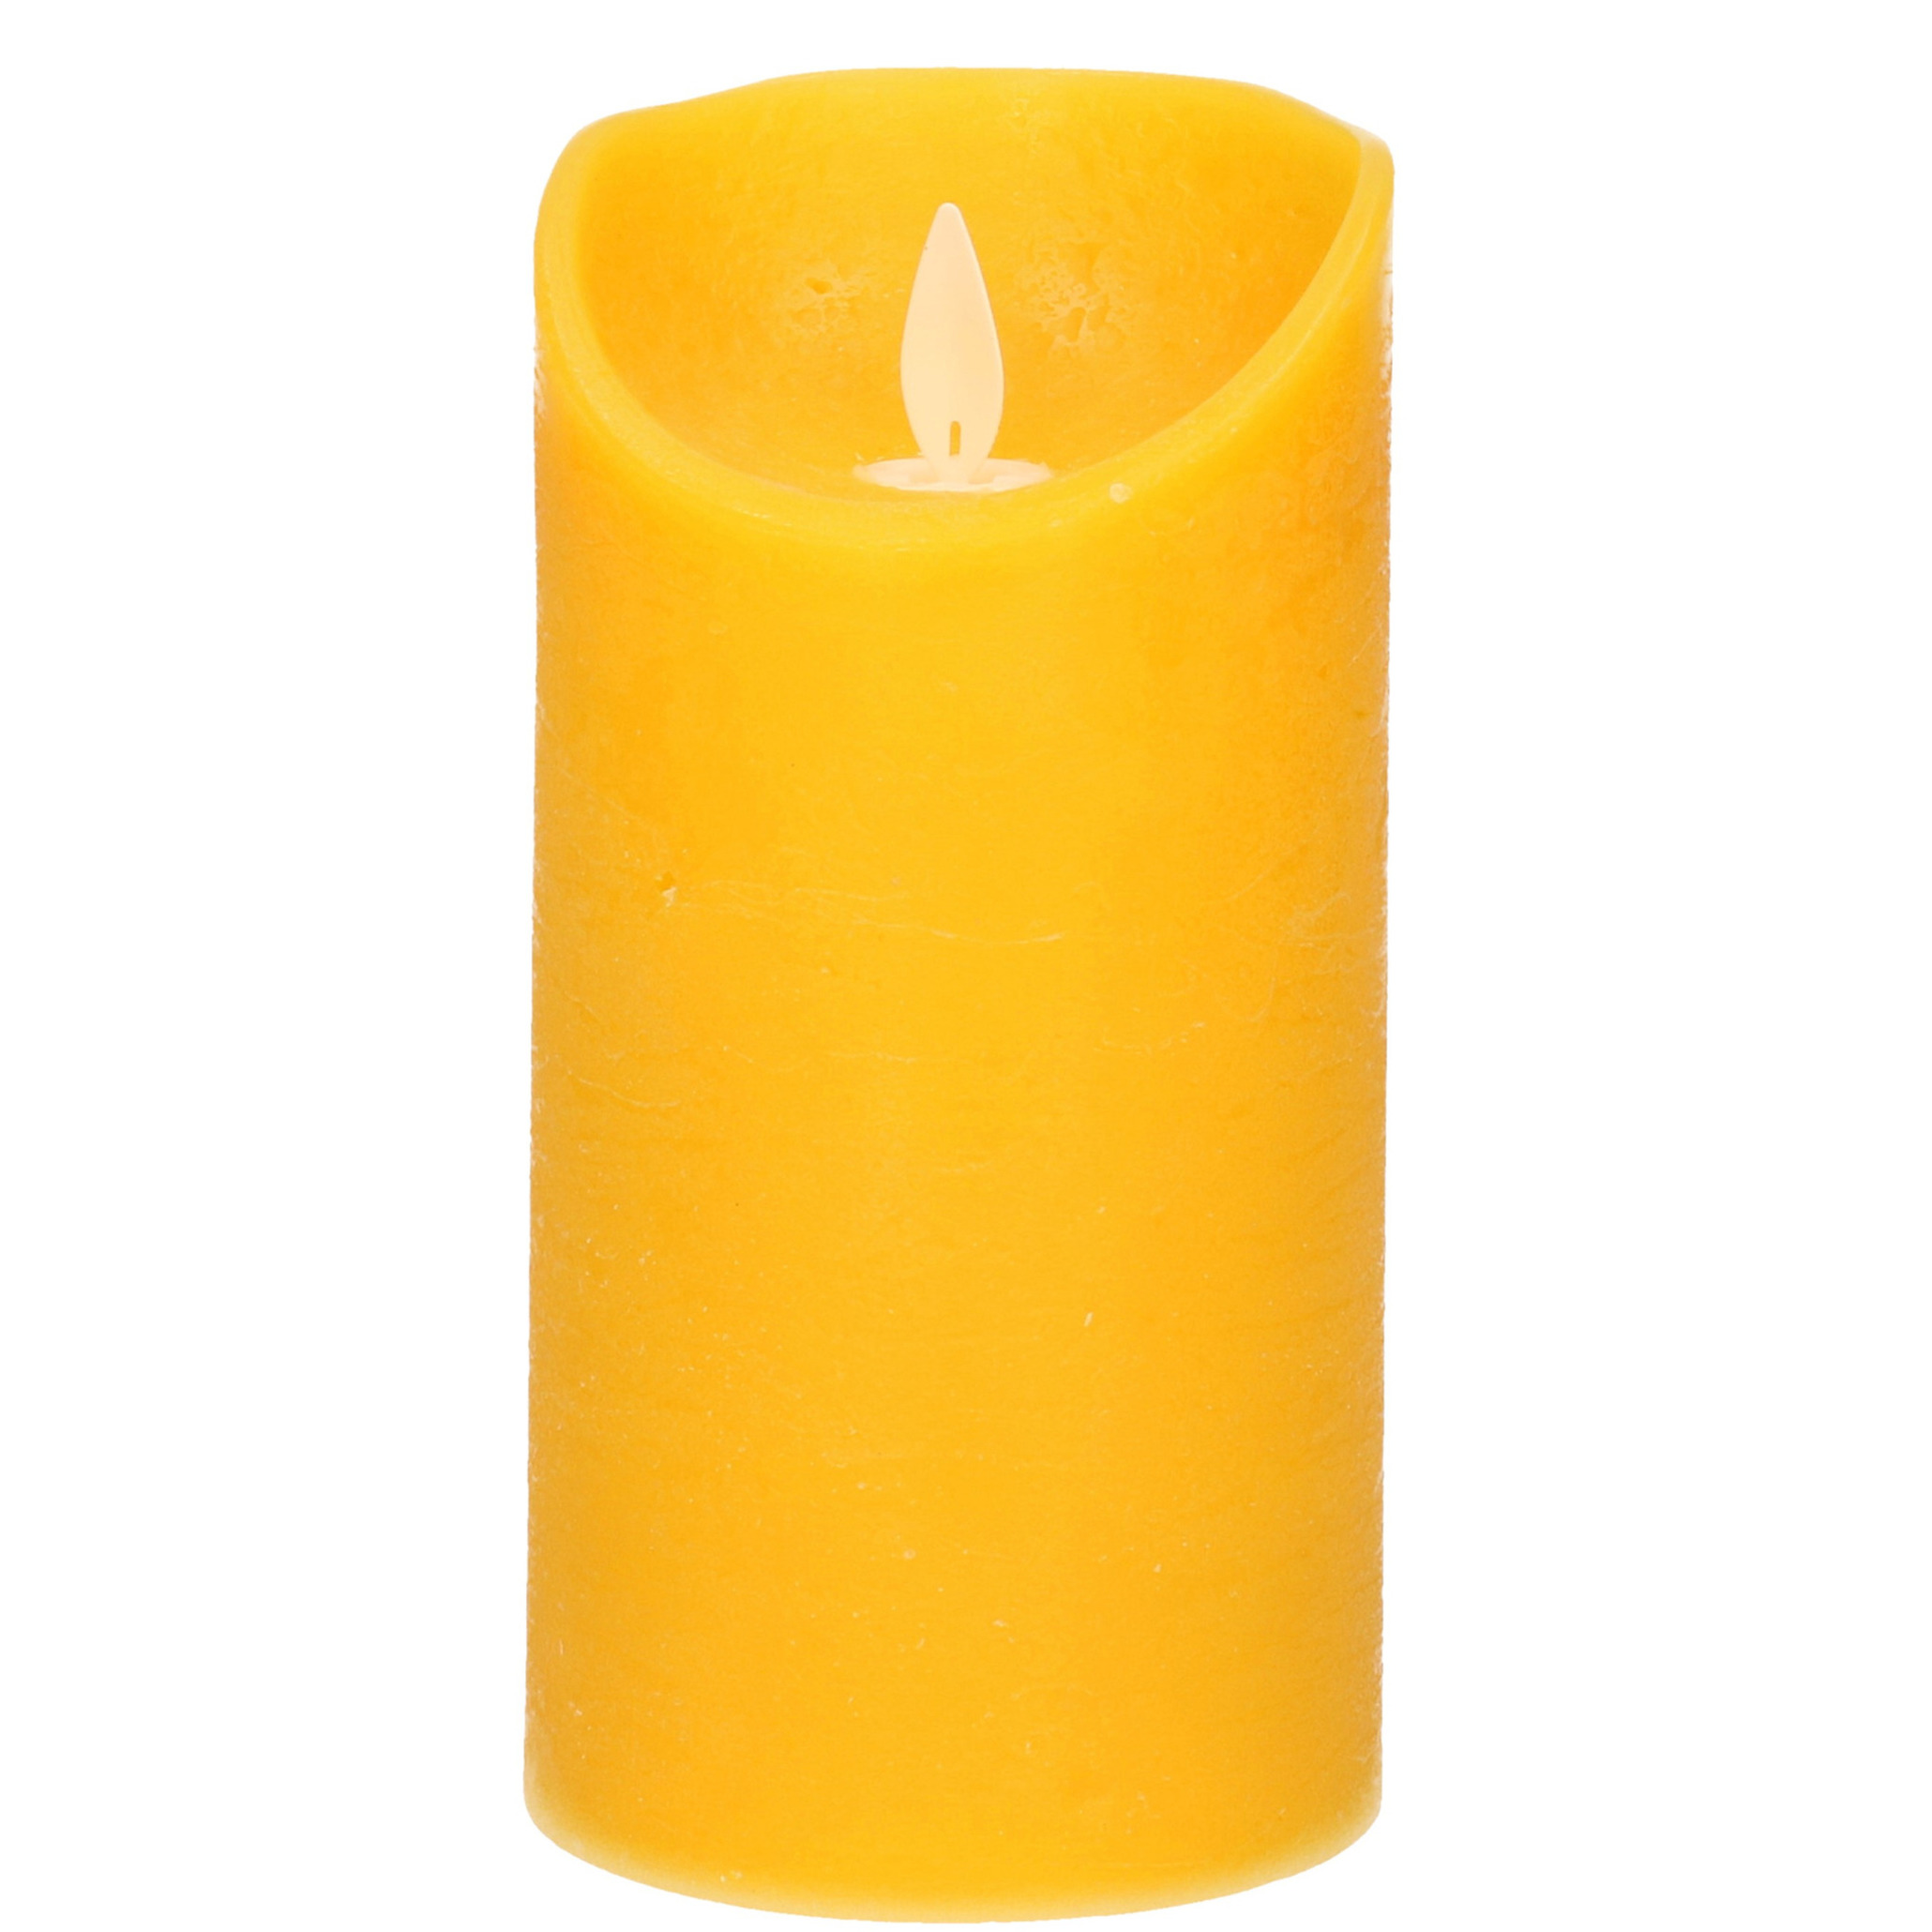 1x Oker gele LED kaarsen / stompkaarsen met bewegende vlam 15 cm